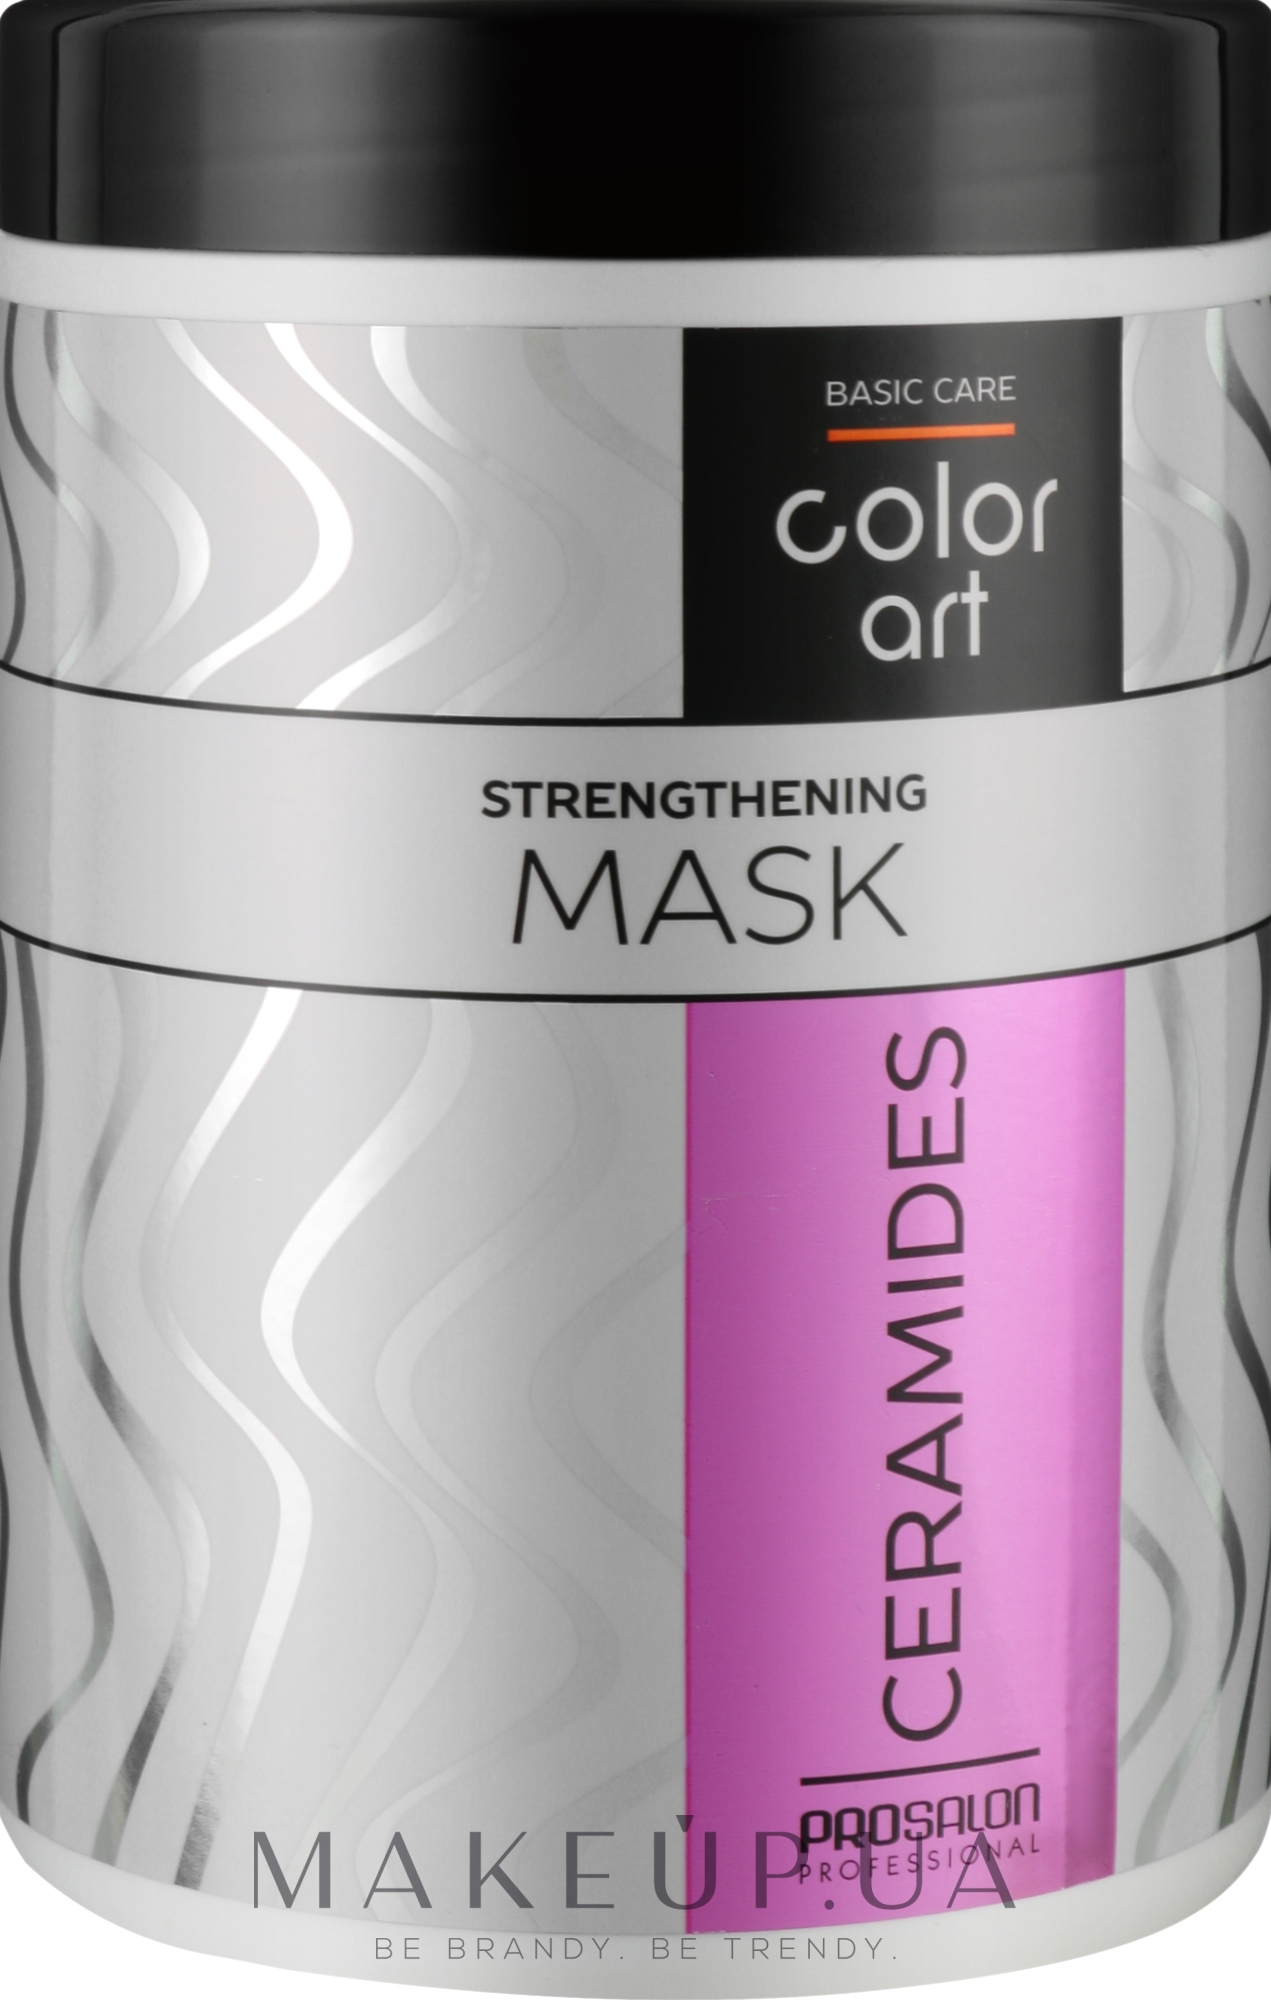 Укрепляющая маска для волос с керамидами - Prosalon Basic Care Color Art Strengthening Mask Ceramides — фото 1000ml